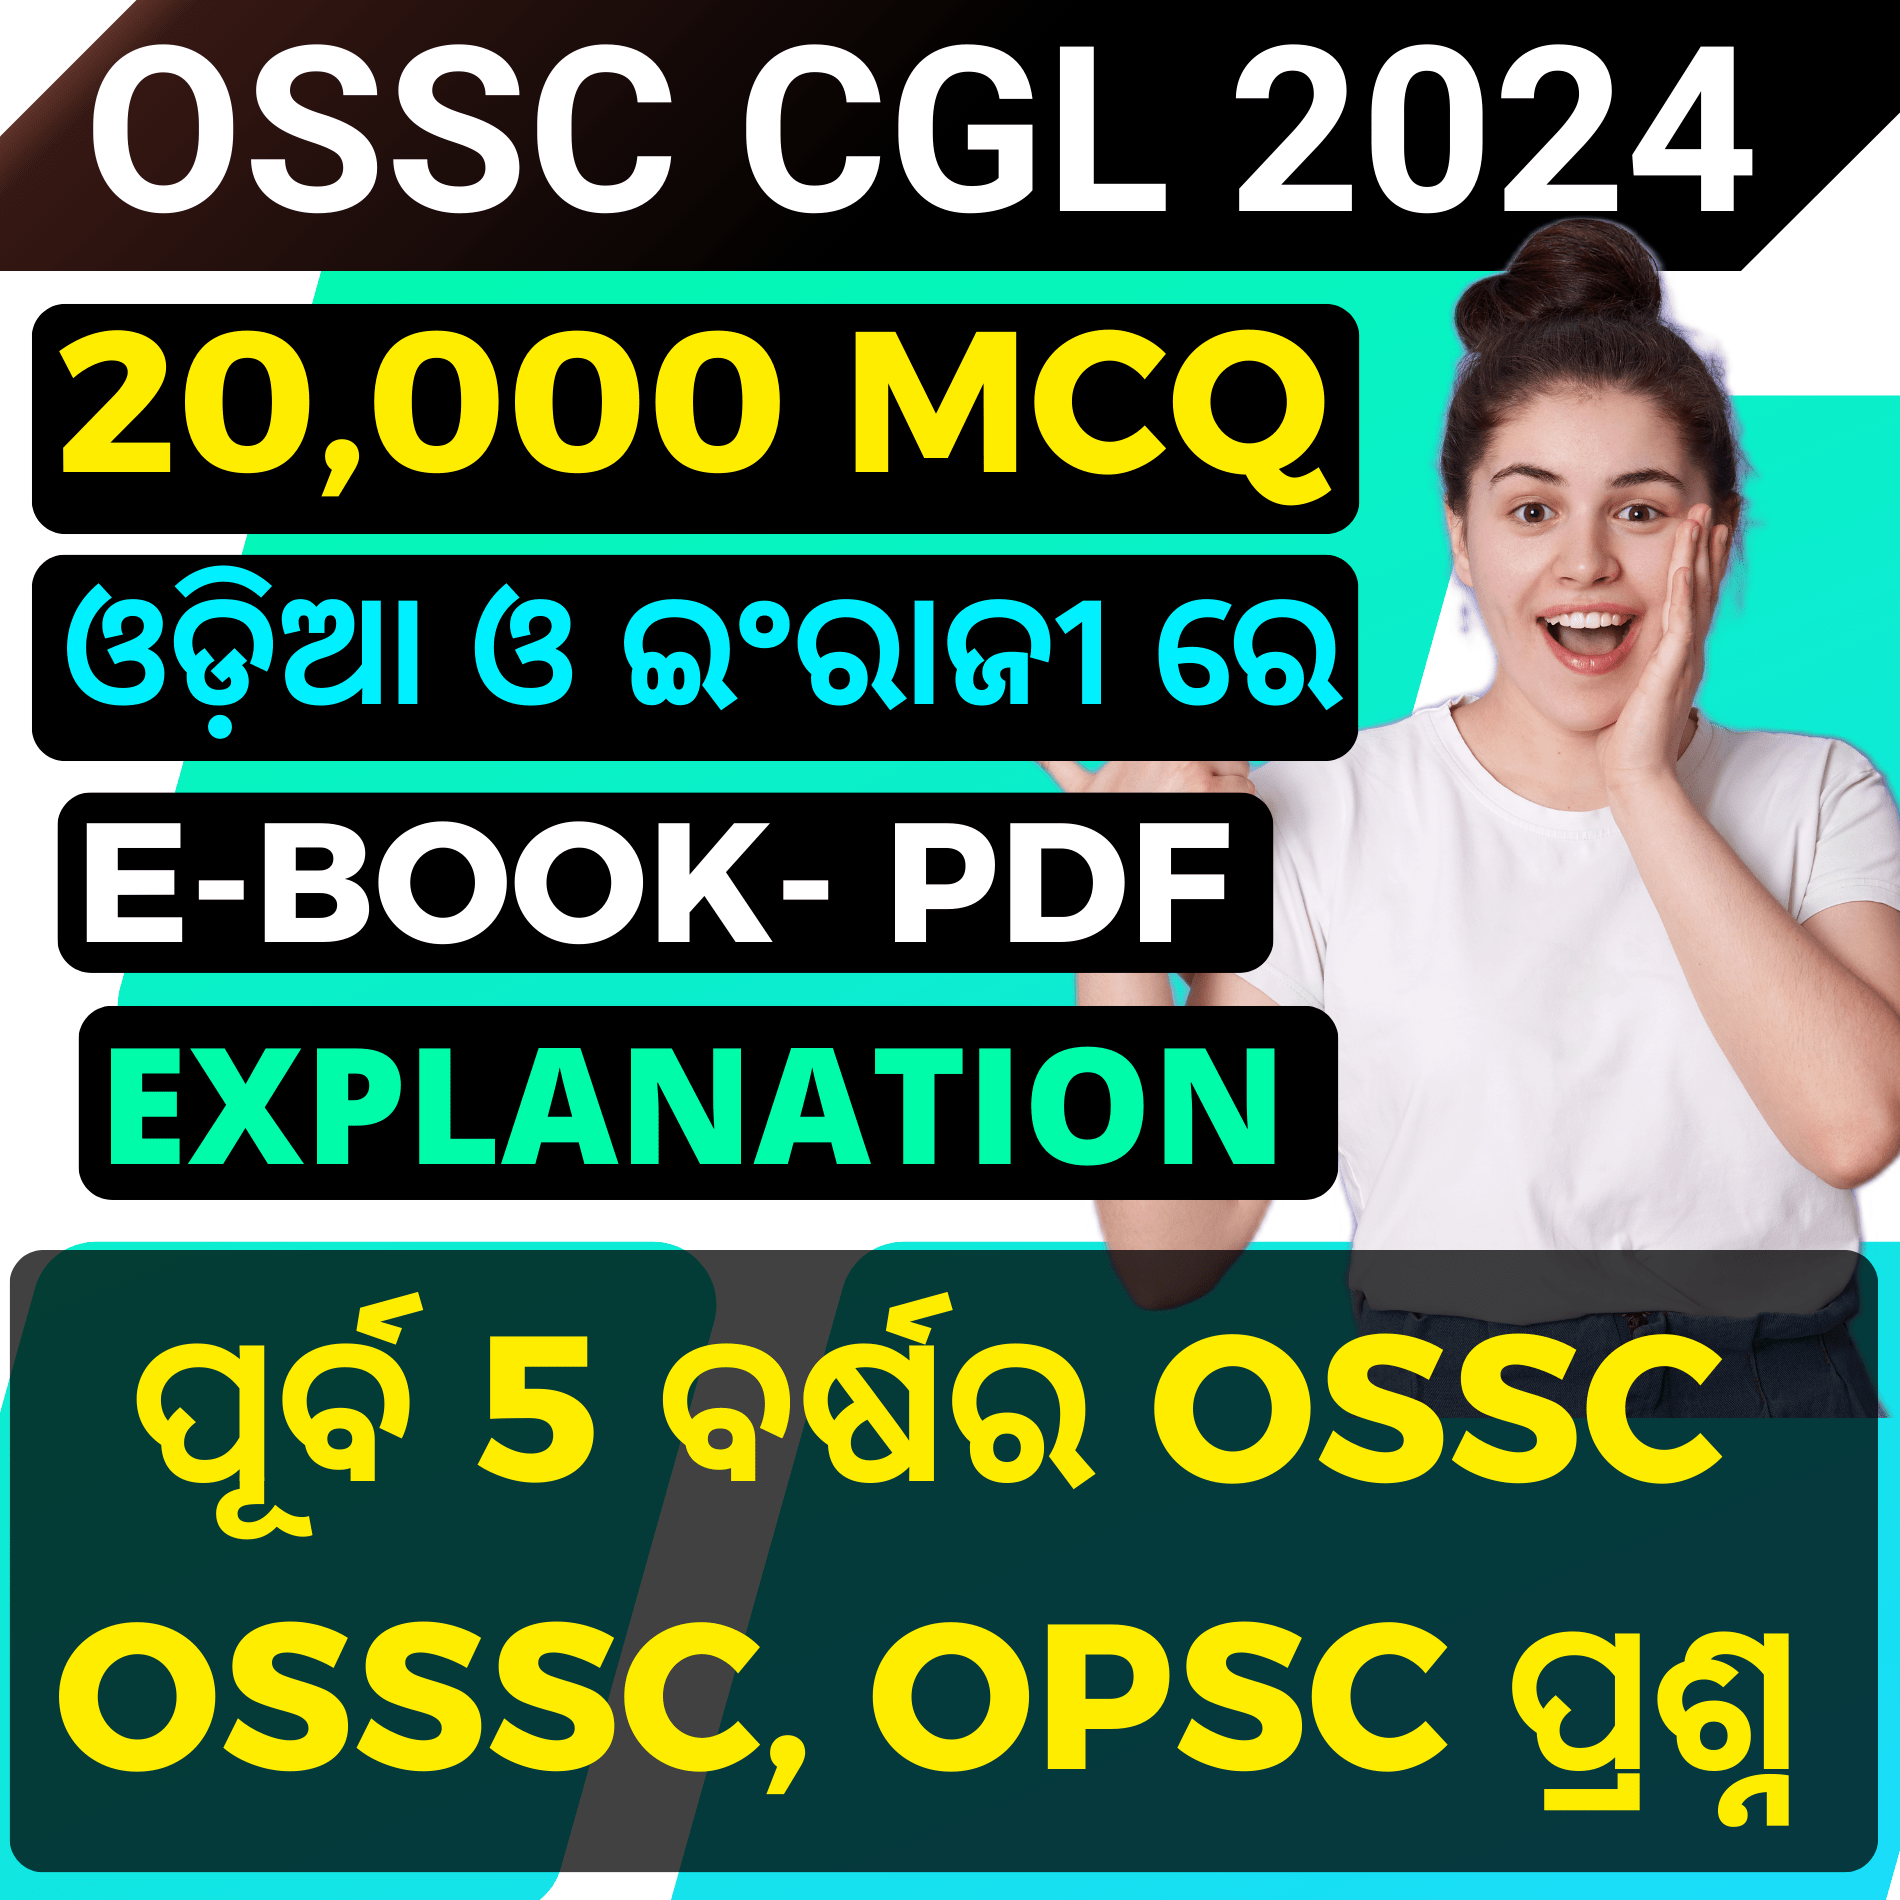 (OSSC CGL Recruitment)